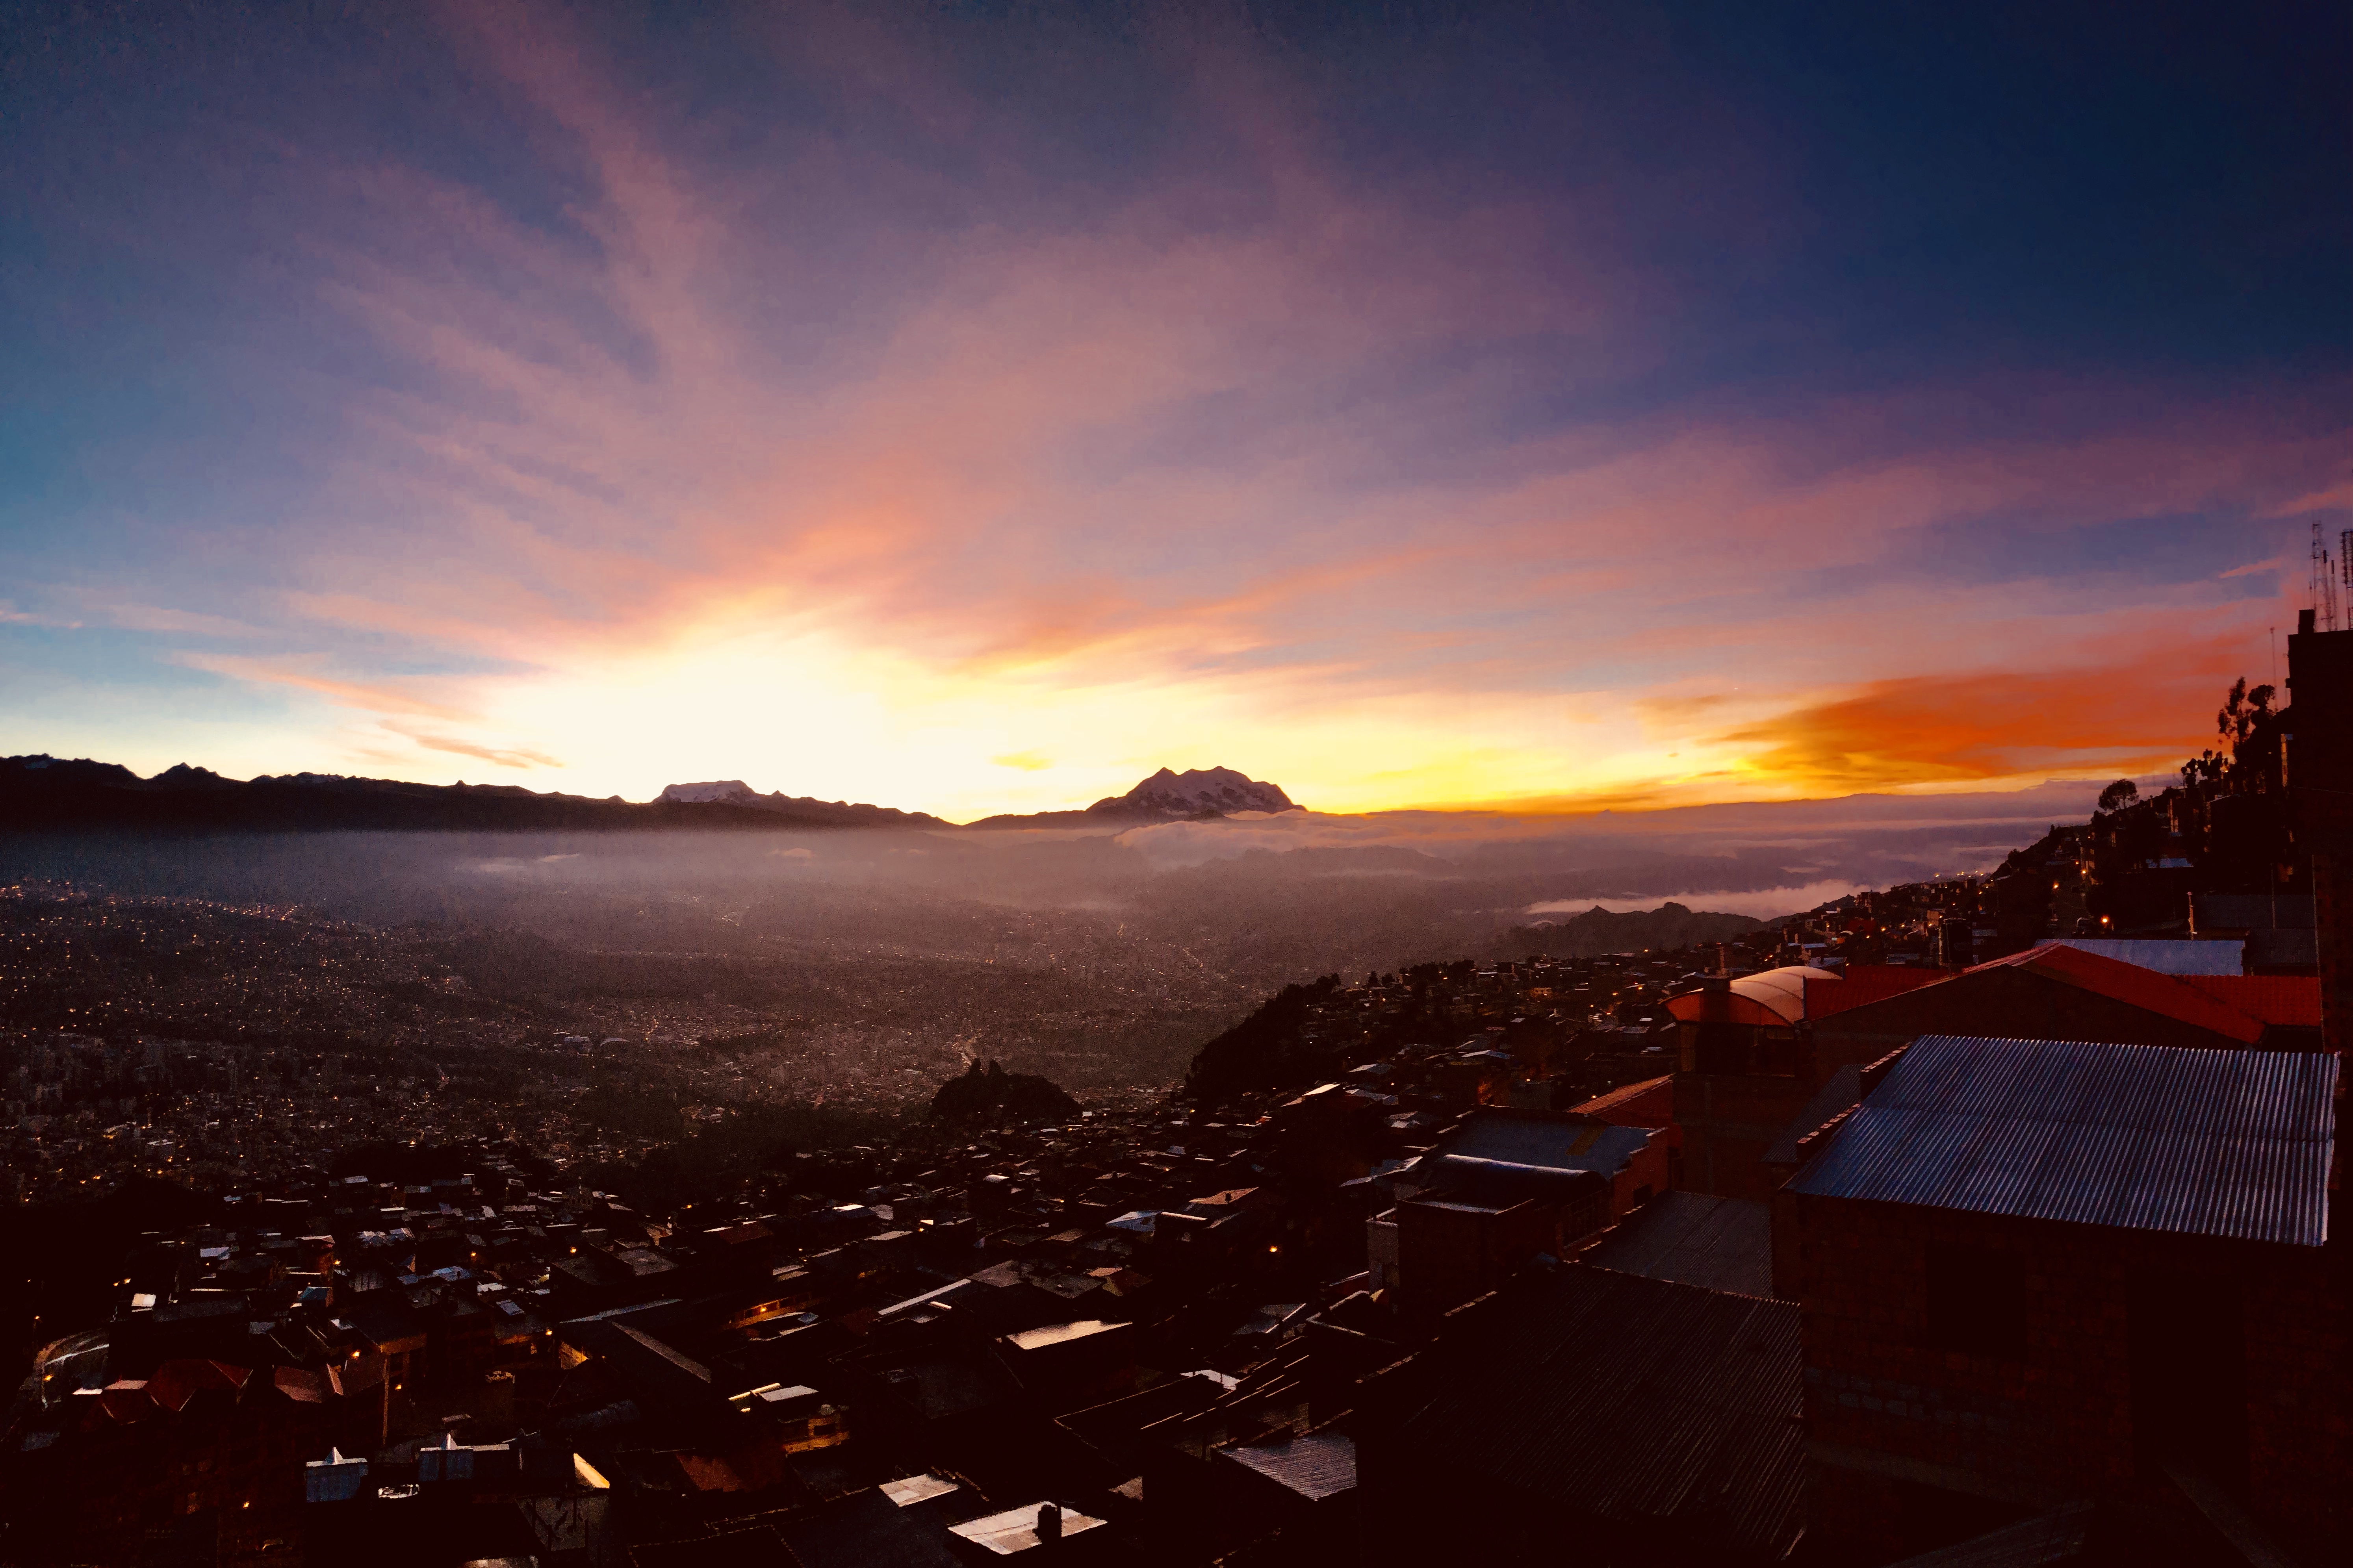 Sunrise over La Paz, Bolivia taken by Nick Butter